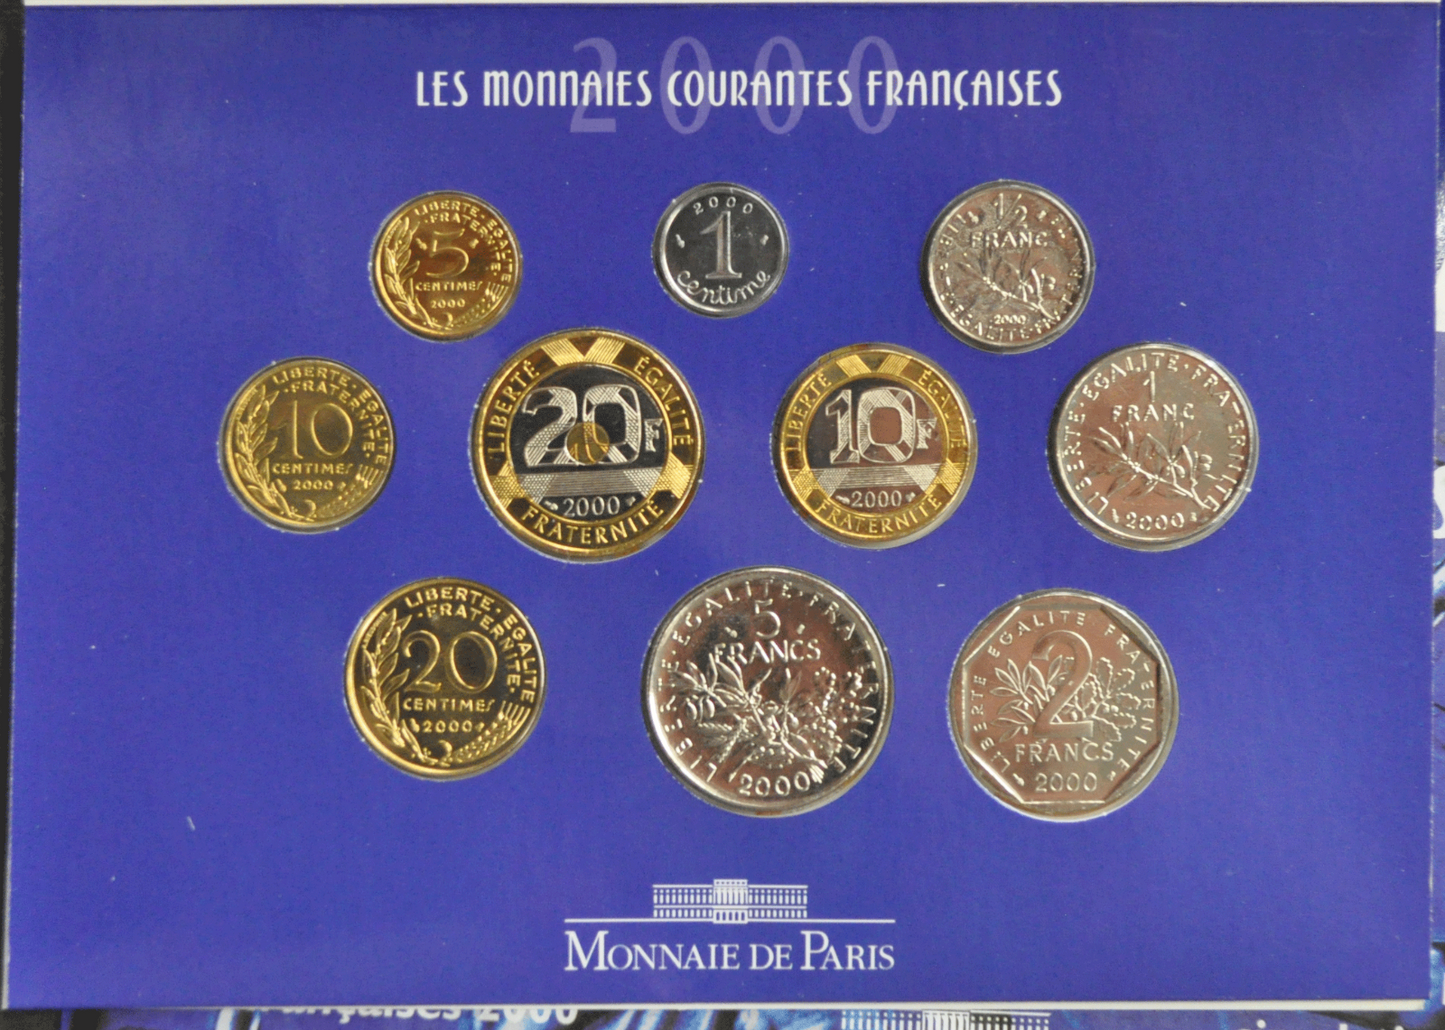 2000 Republique Francaise Monnaies Courantes Brillant Universal 10 Coin Set